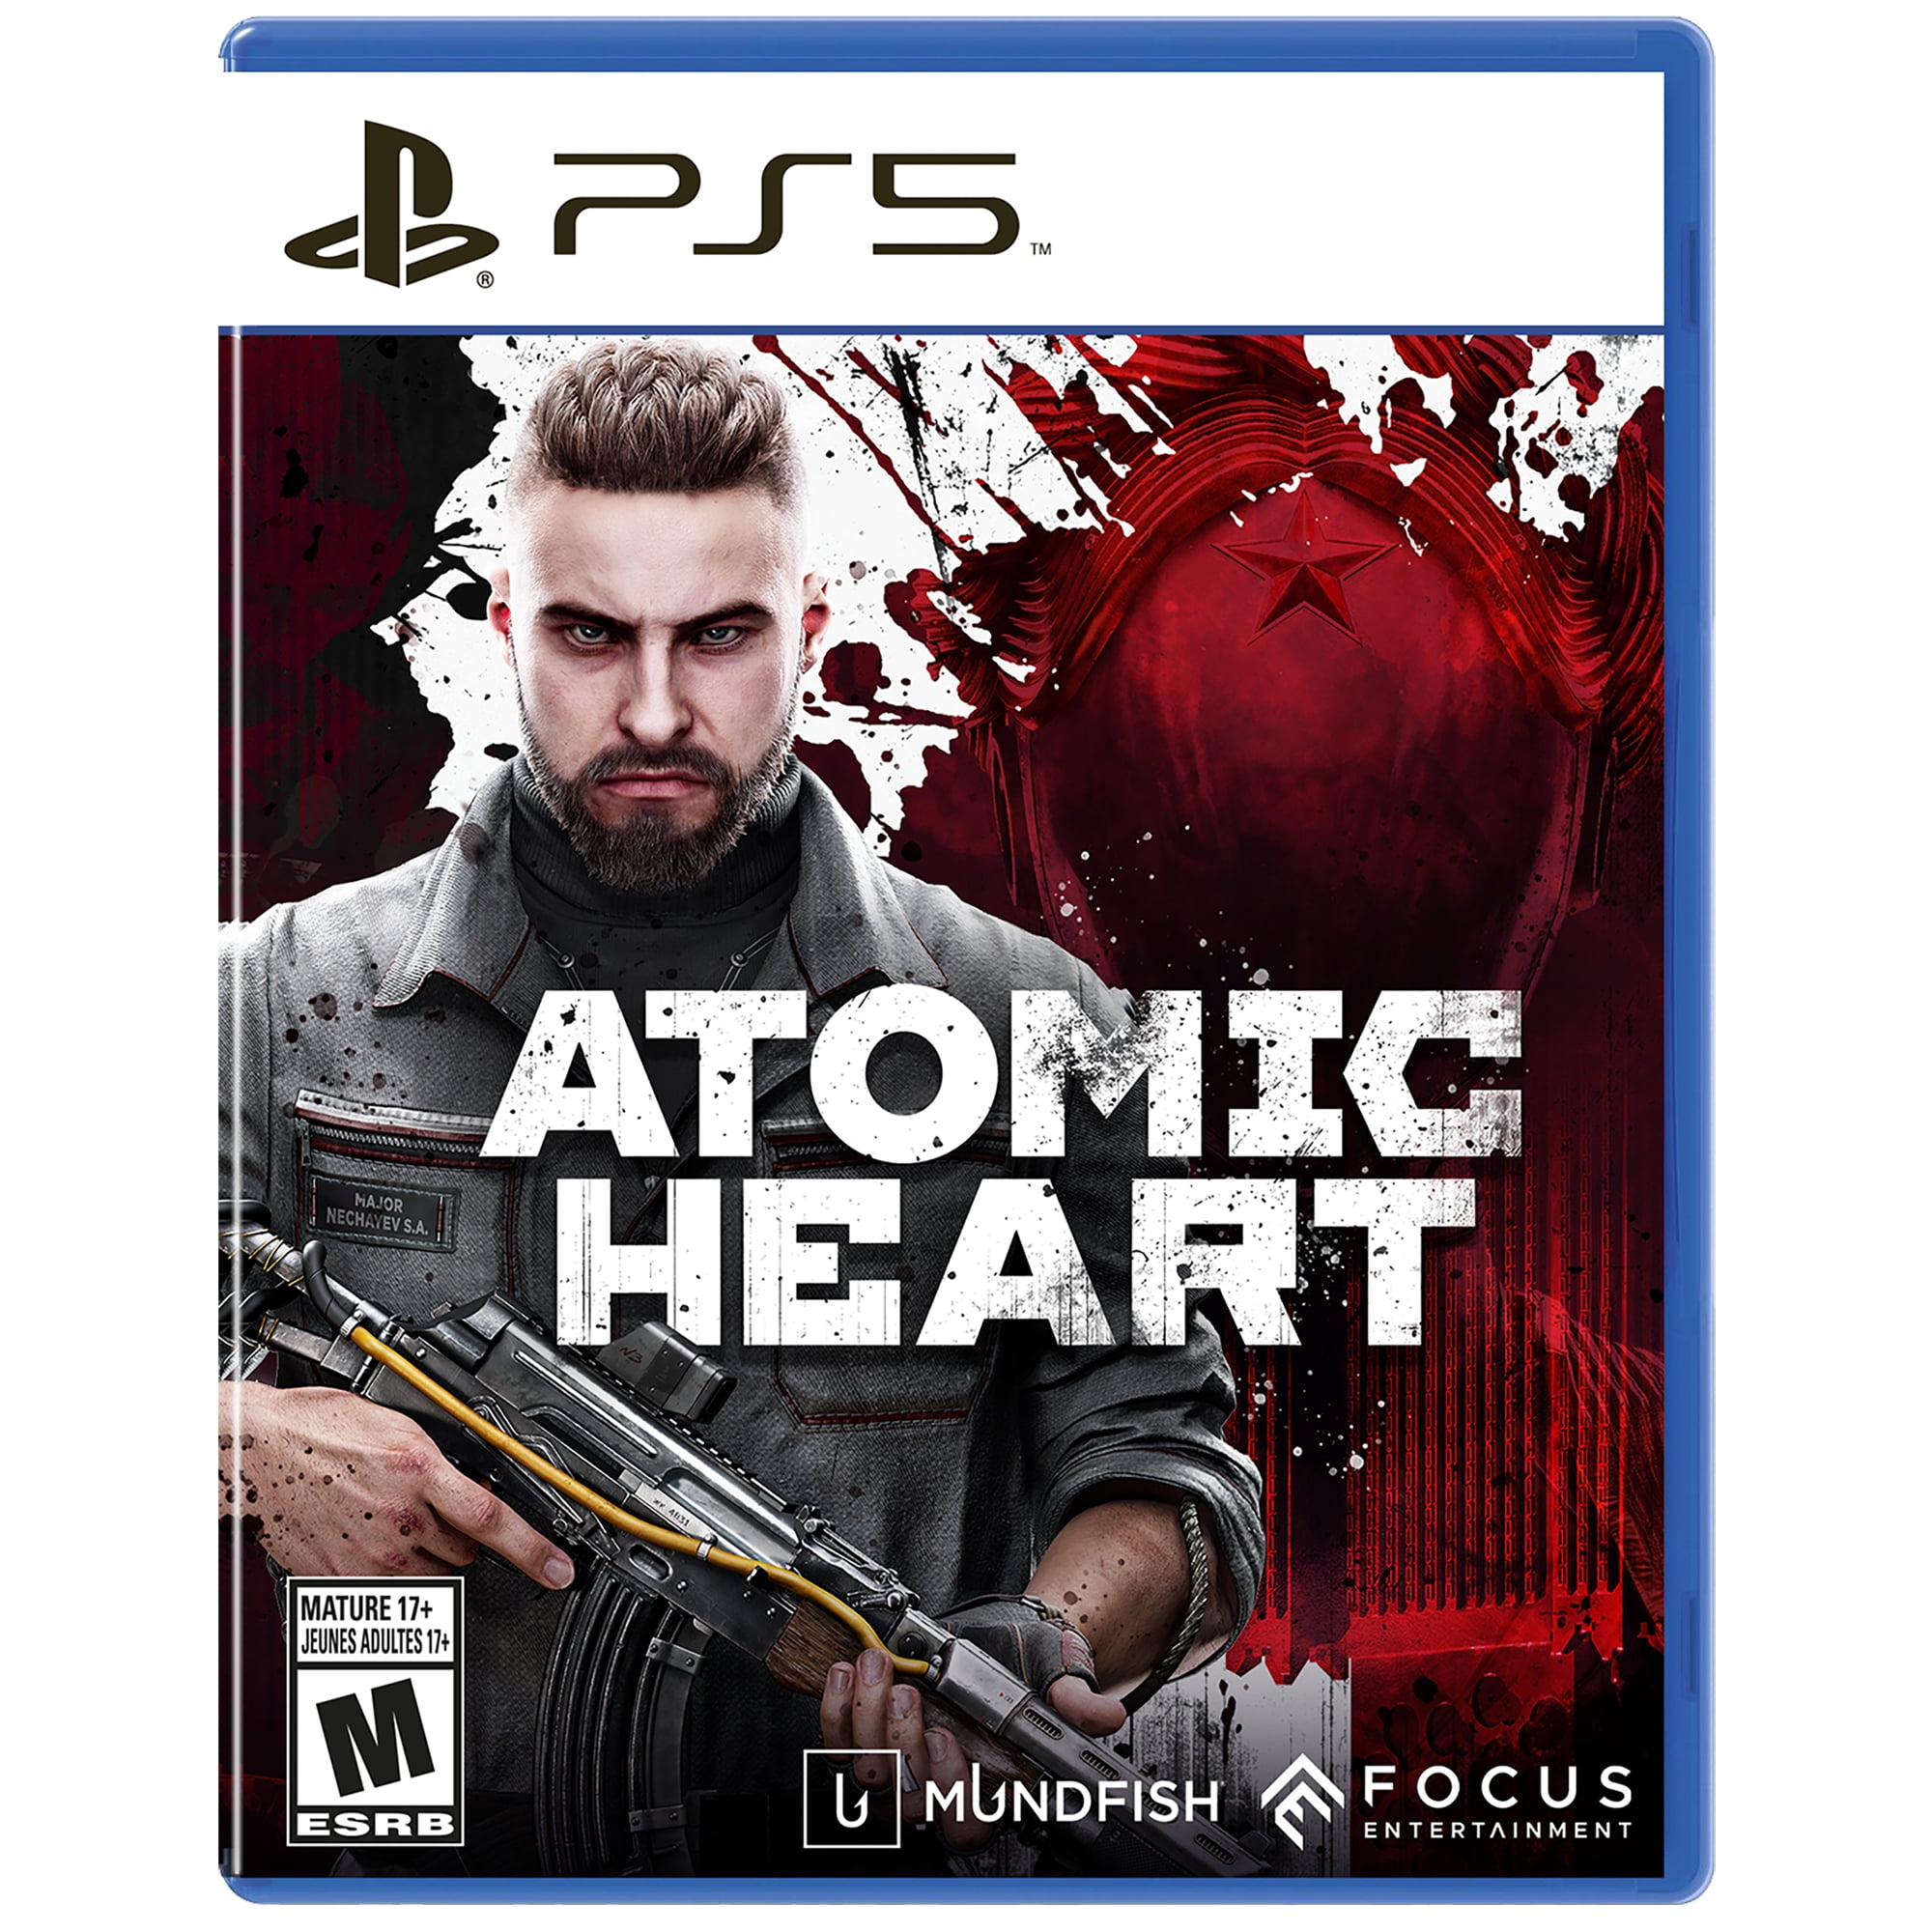 Atomic Heart: Entenda a polêmica sobre o game